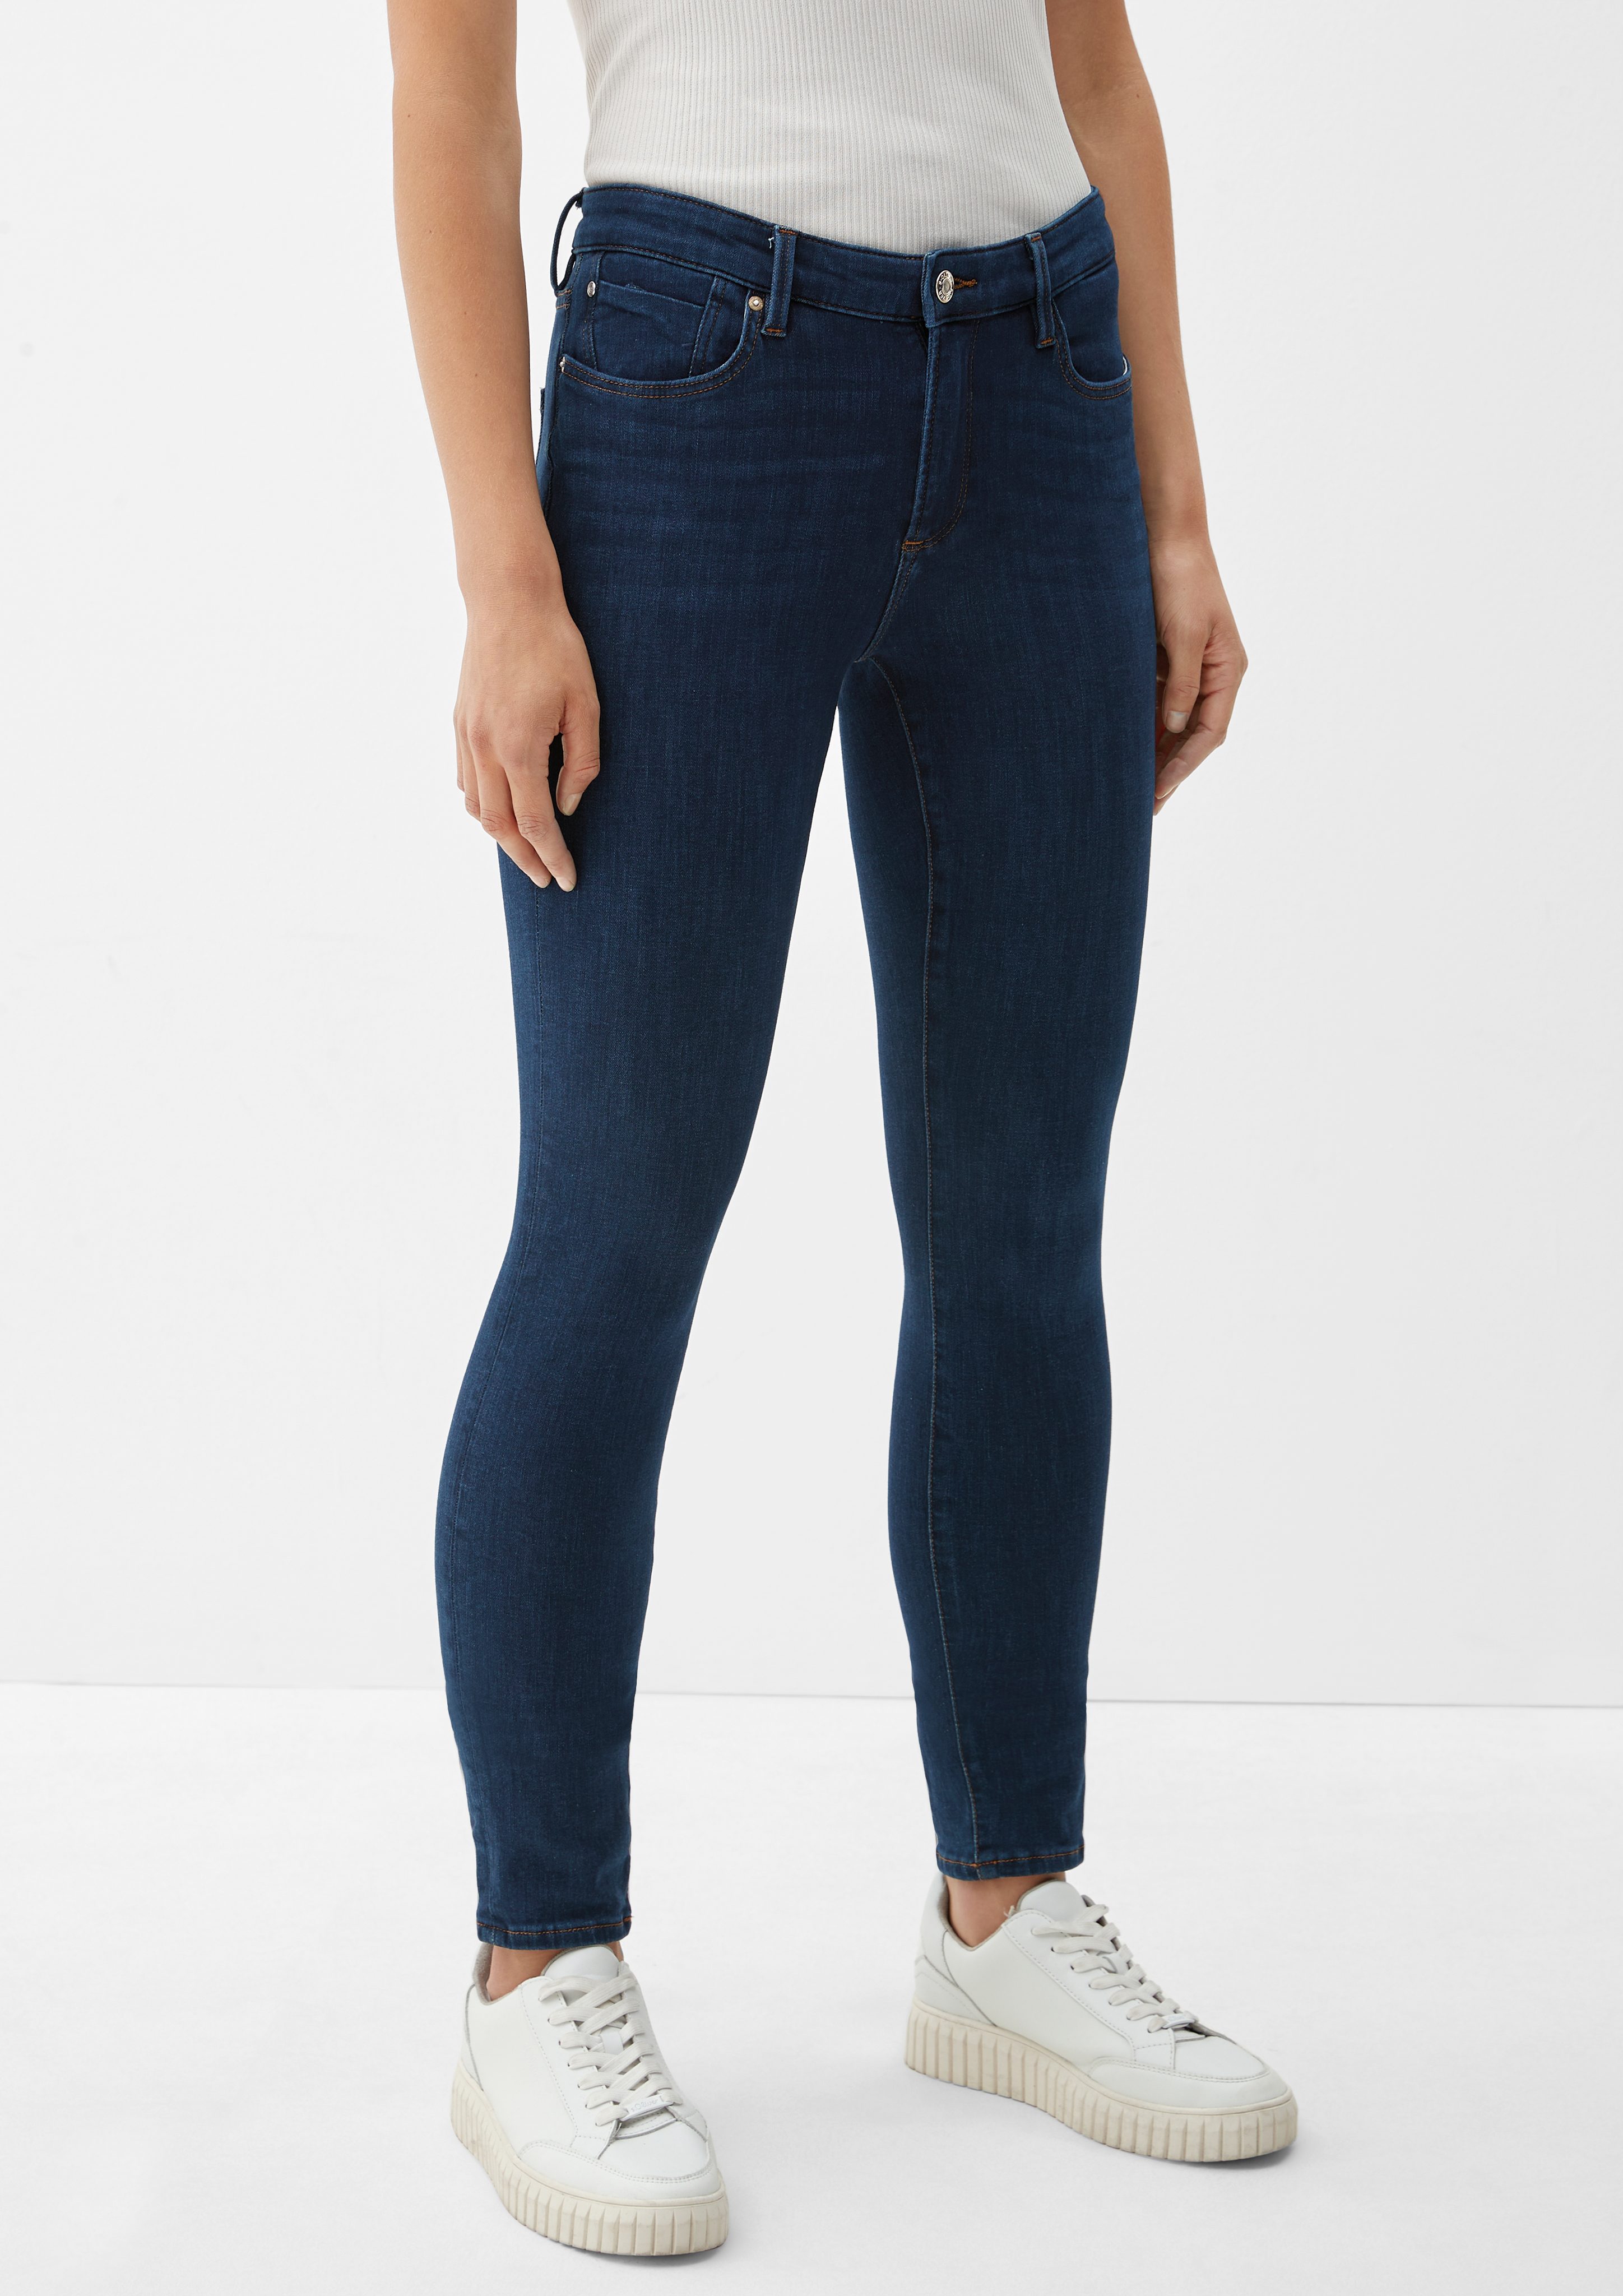 / Jeans Fit Skinny Rise Mid dark / Izabell Skinny / Leg blue Label-Patch 5-Pocket-Jeans s.Oliver